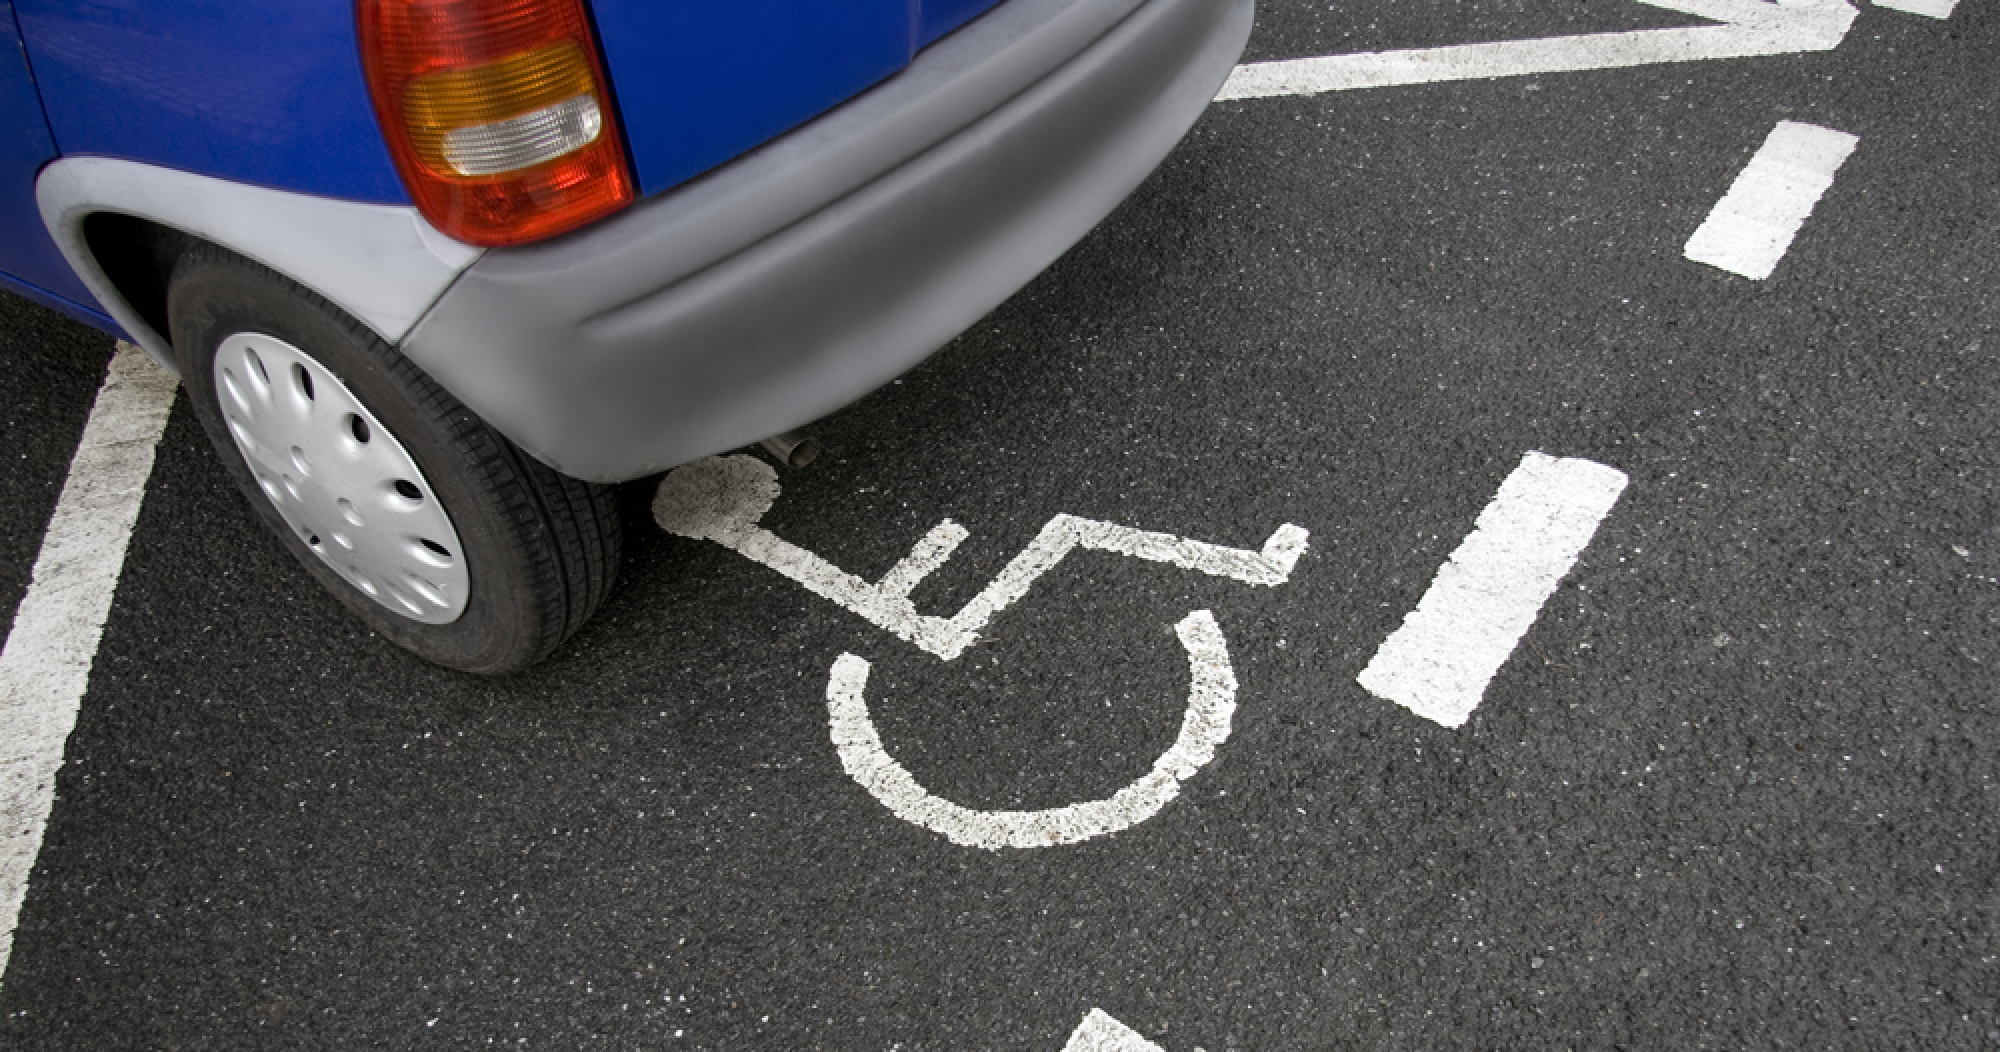 Stationnement à Paris pour les personnes en situation de handicap